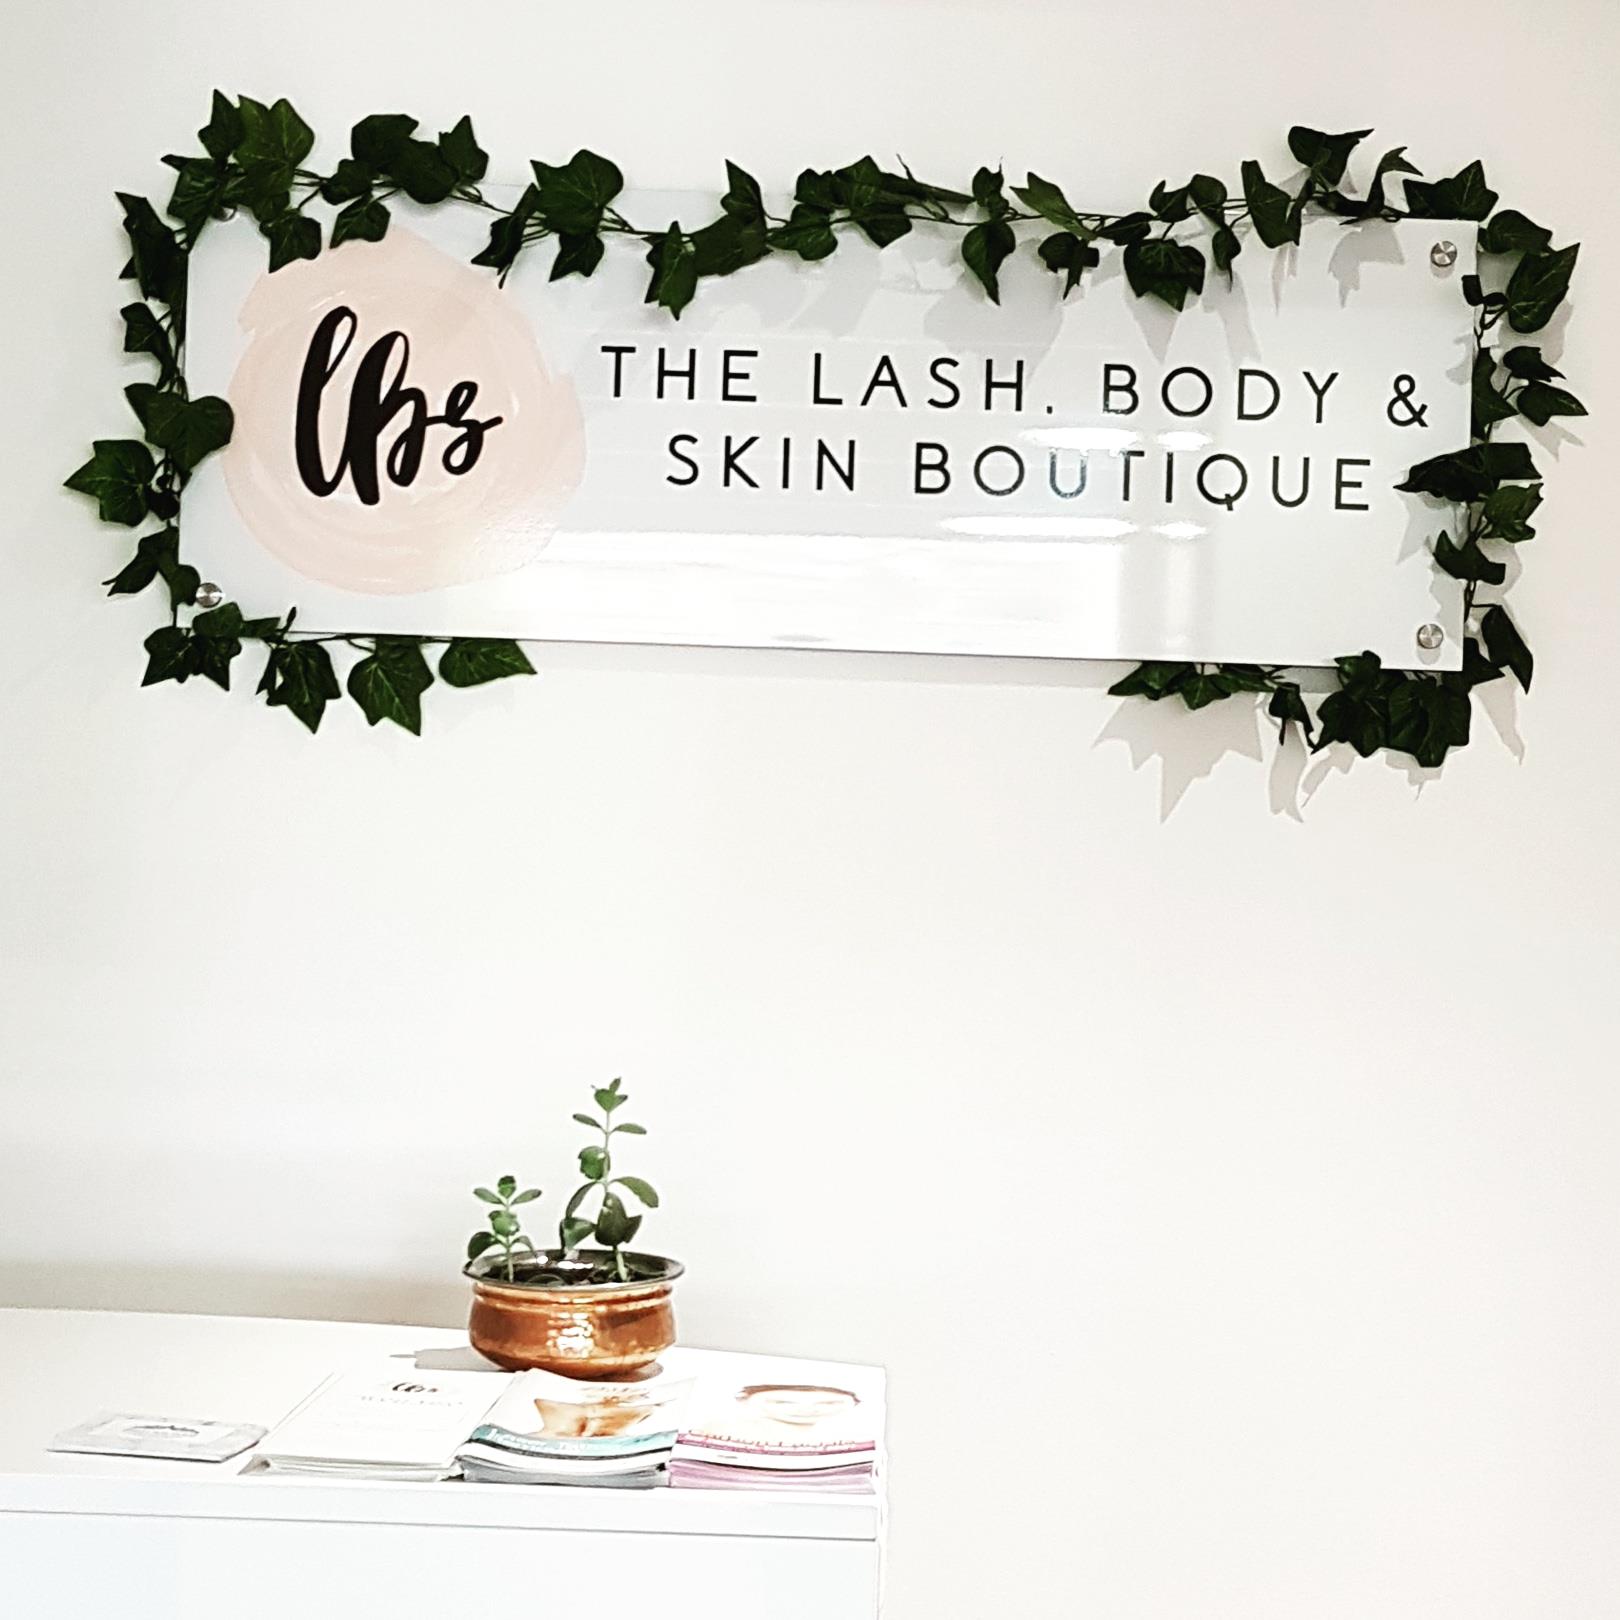 The Lash, Body & Skin Boutique